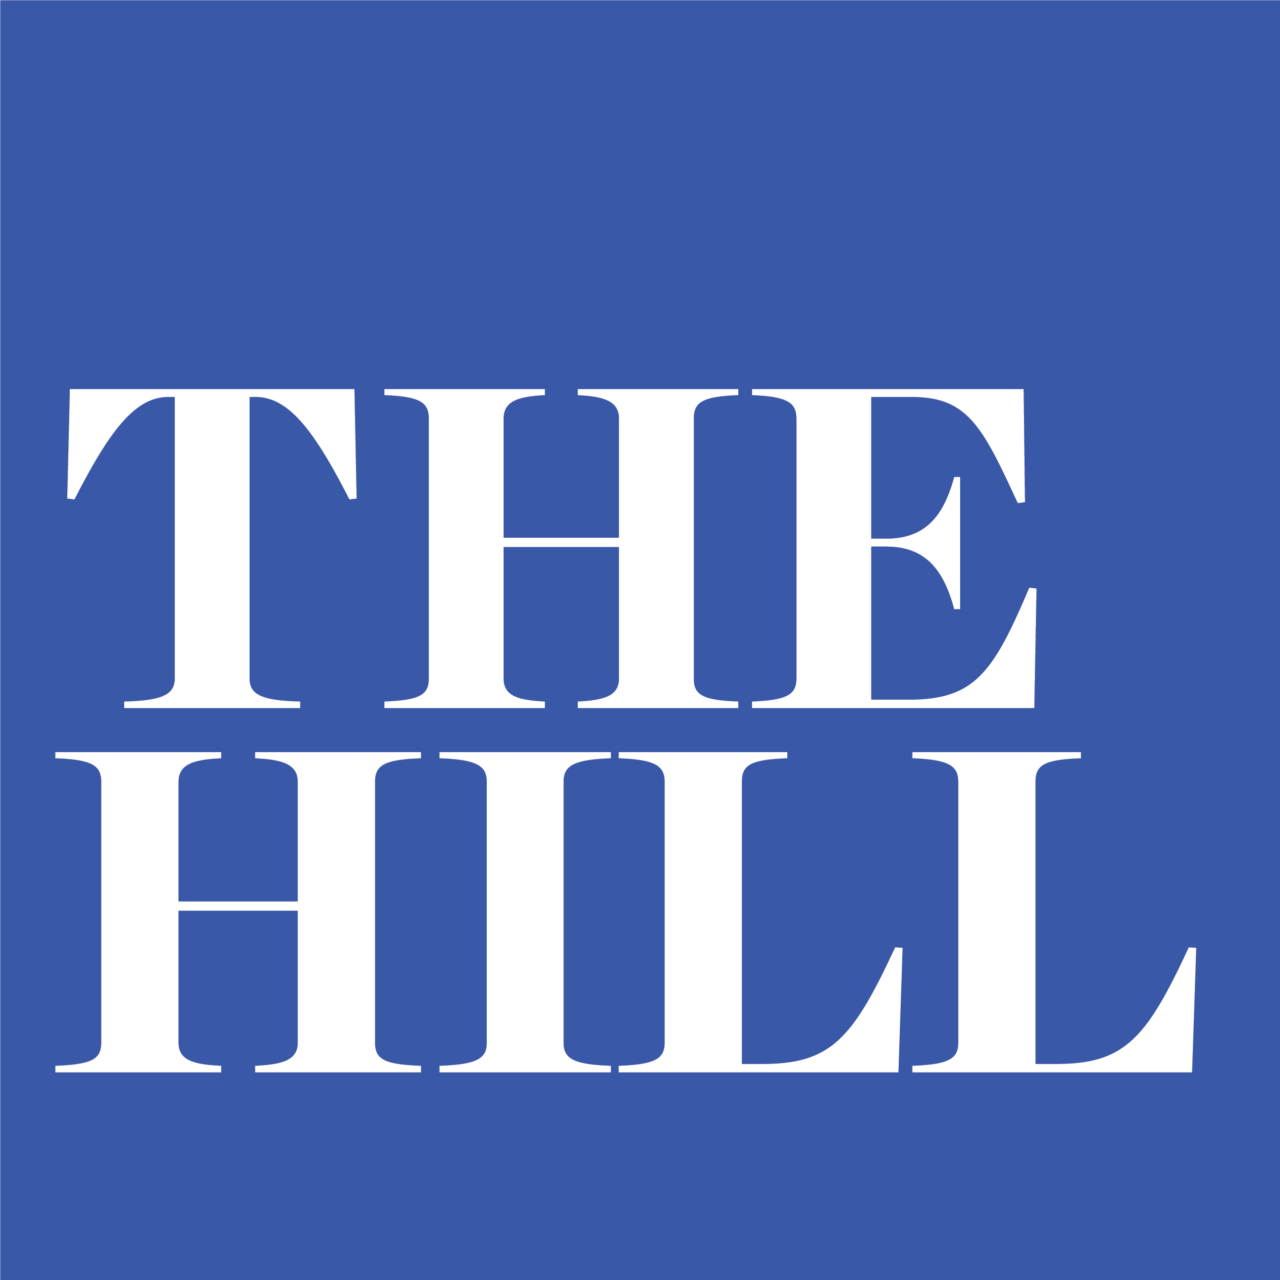 thehill.com 프록시